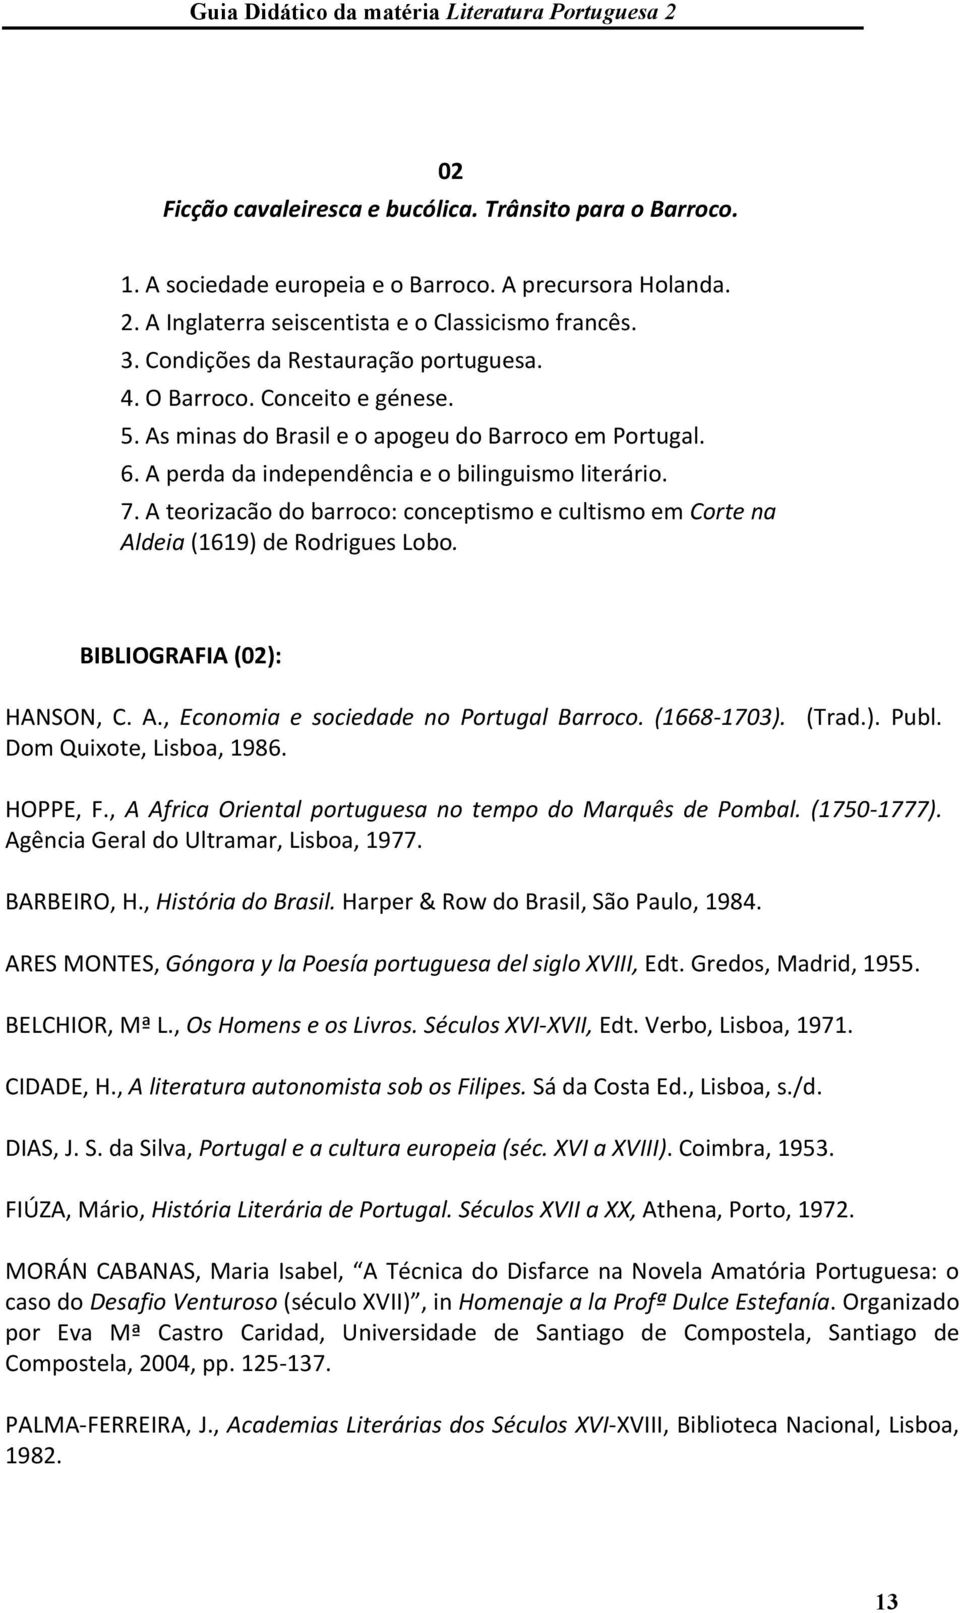 A teorizacão do barroco: conceptismo e cultismo em Corte na Aldeia (1619) de Rodrigues Lobo. BIBLIOGRAFIA (02): HANSON, C. A., Economia e sociedade no Portugal Barroco. (1668-1703). (Trad.). Publ.